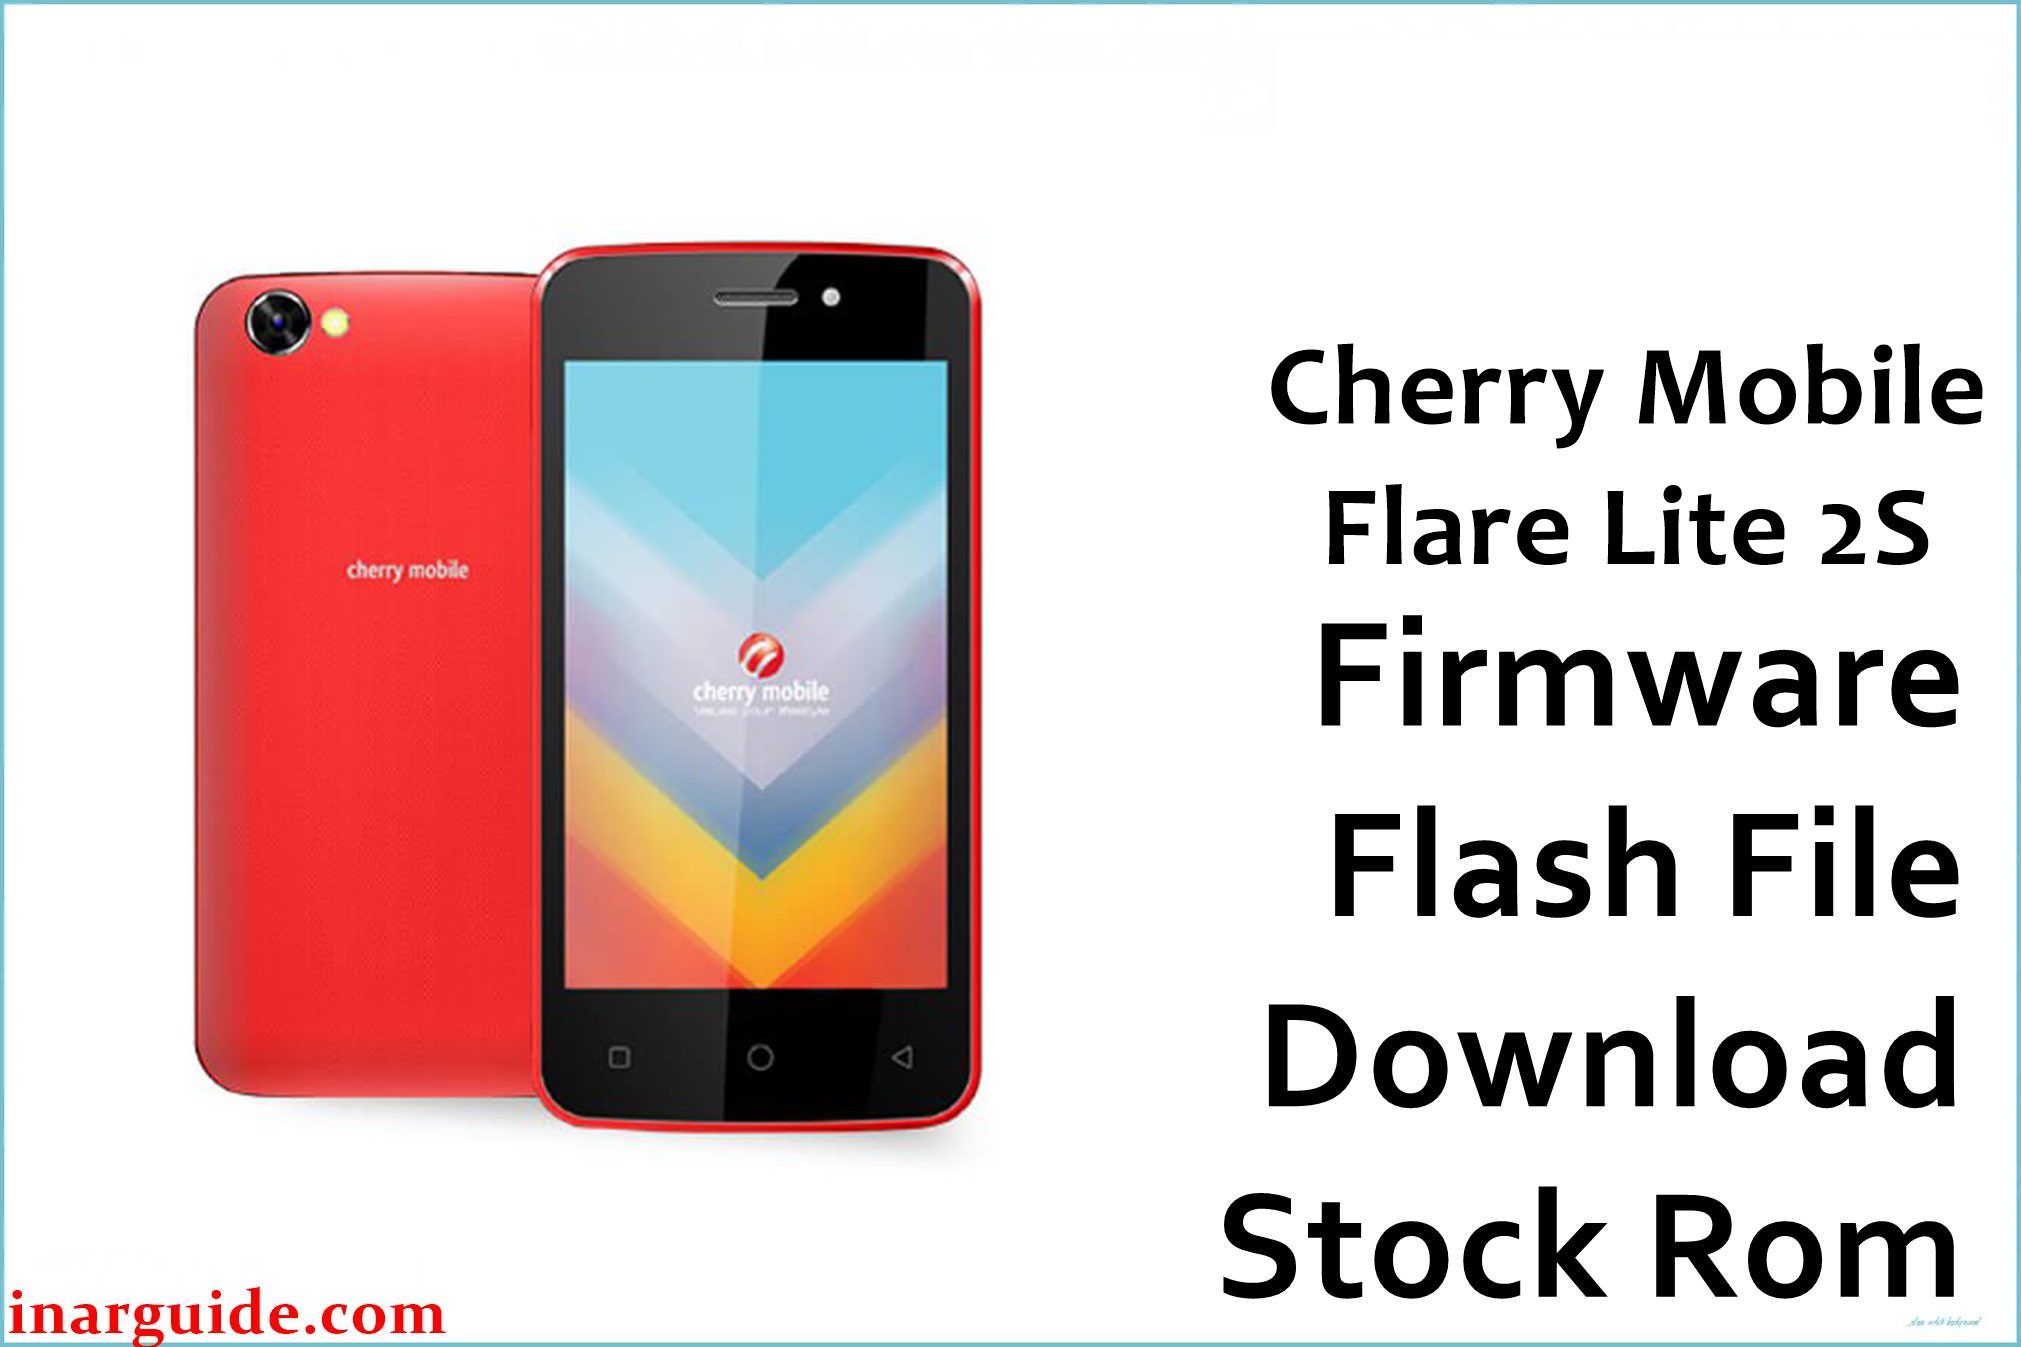 Cherry Mobile Flare Lite 2S